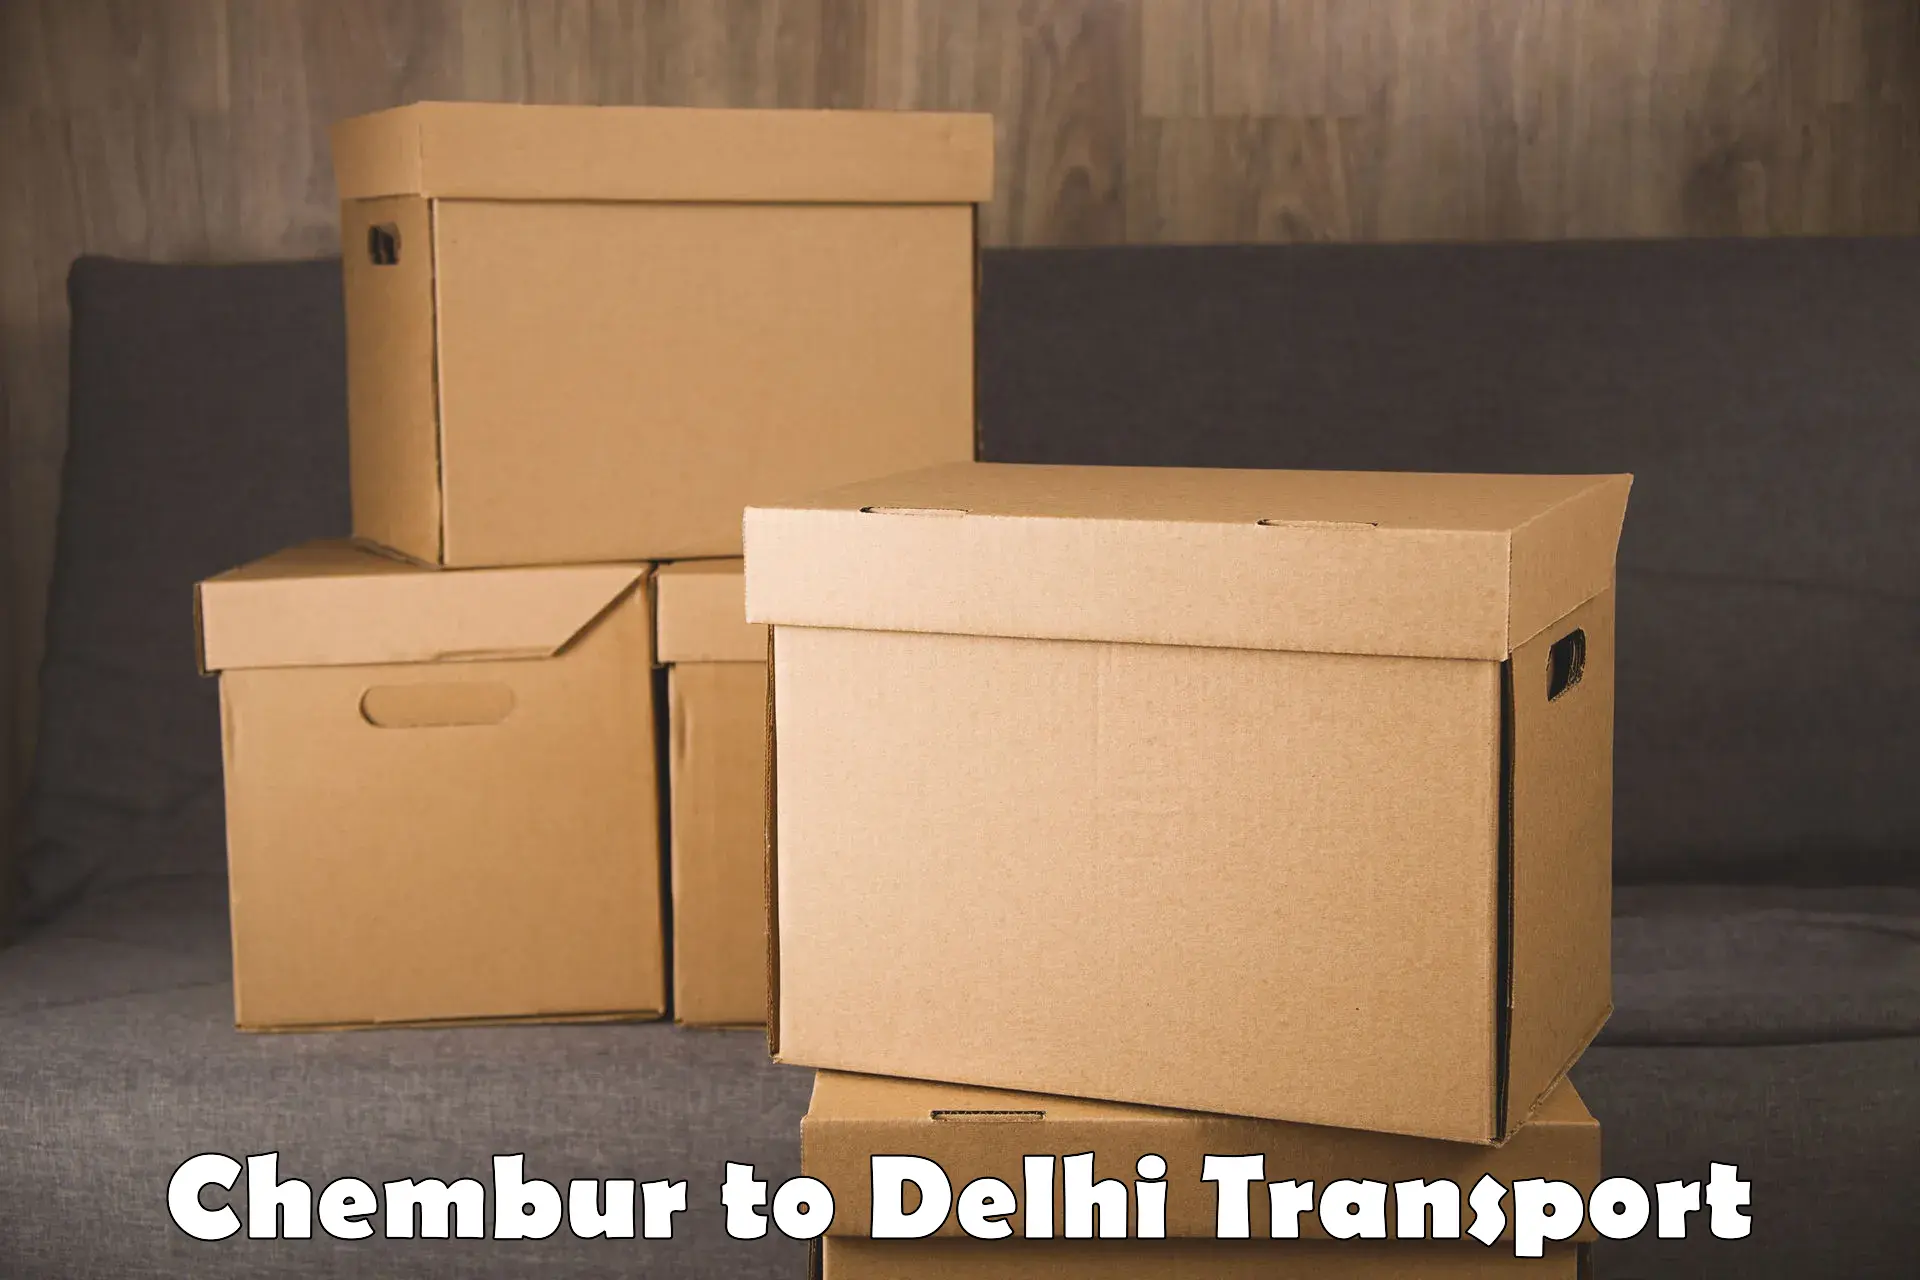 International cargo transportation services Chembur to Delhi